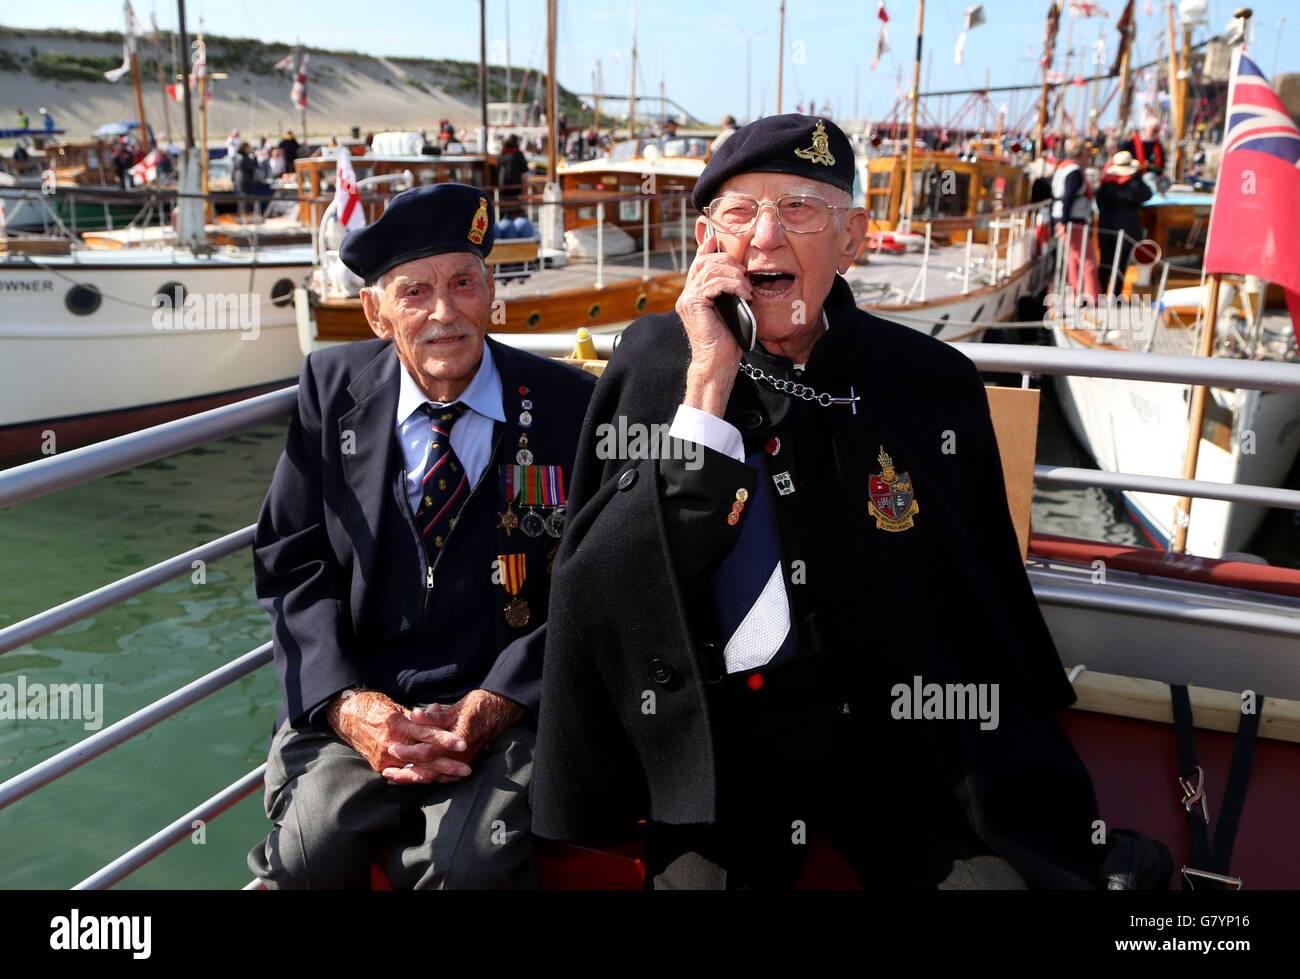 Les anciens combattants de Dunkerque Michael Bentall, 94 ans (à gauche) et Garth Wright (95 ans) à bord du petit navire la princesse Freda comme les petits navires arrivent à Dunkerque, en France, pour marquer le 75e anniversaire de l'opération Dynamo. Banque D'Images